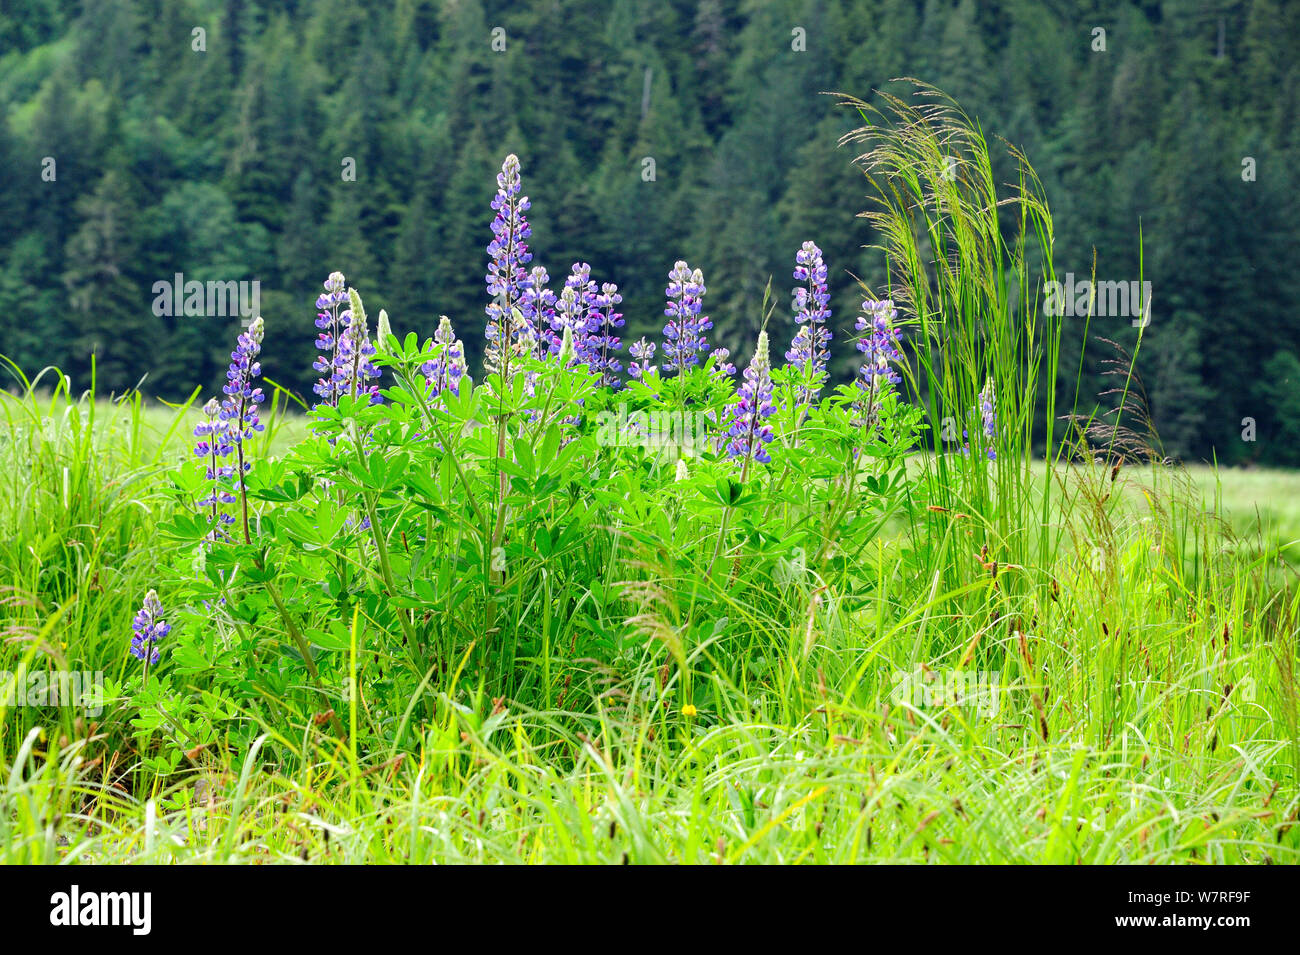 La baie Nootka lupin (Lupinus nootkatensis) un ours, la plante préférée des Grizzlis Khutzeymateen Sanctuaire, British Columbia, Canada, juin. Banque D'Images